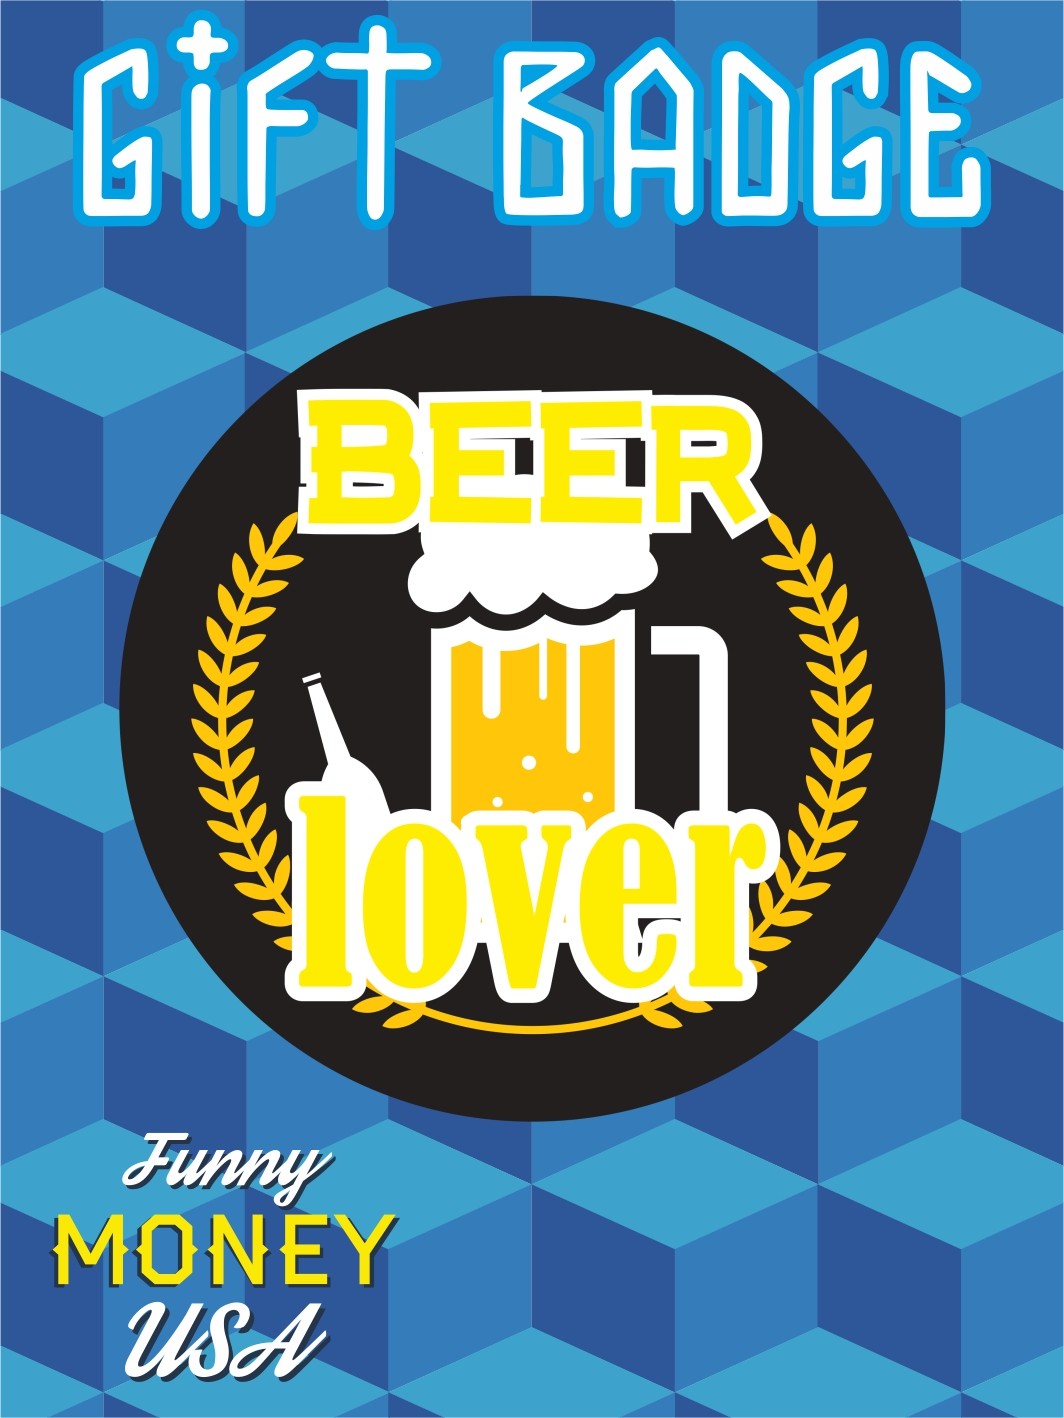 Gift badges "Beer lover"